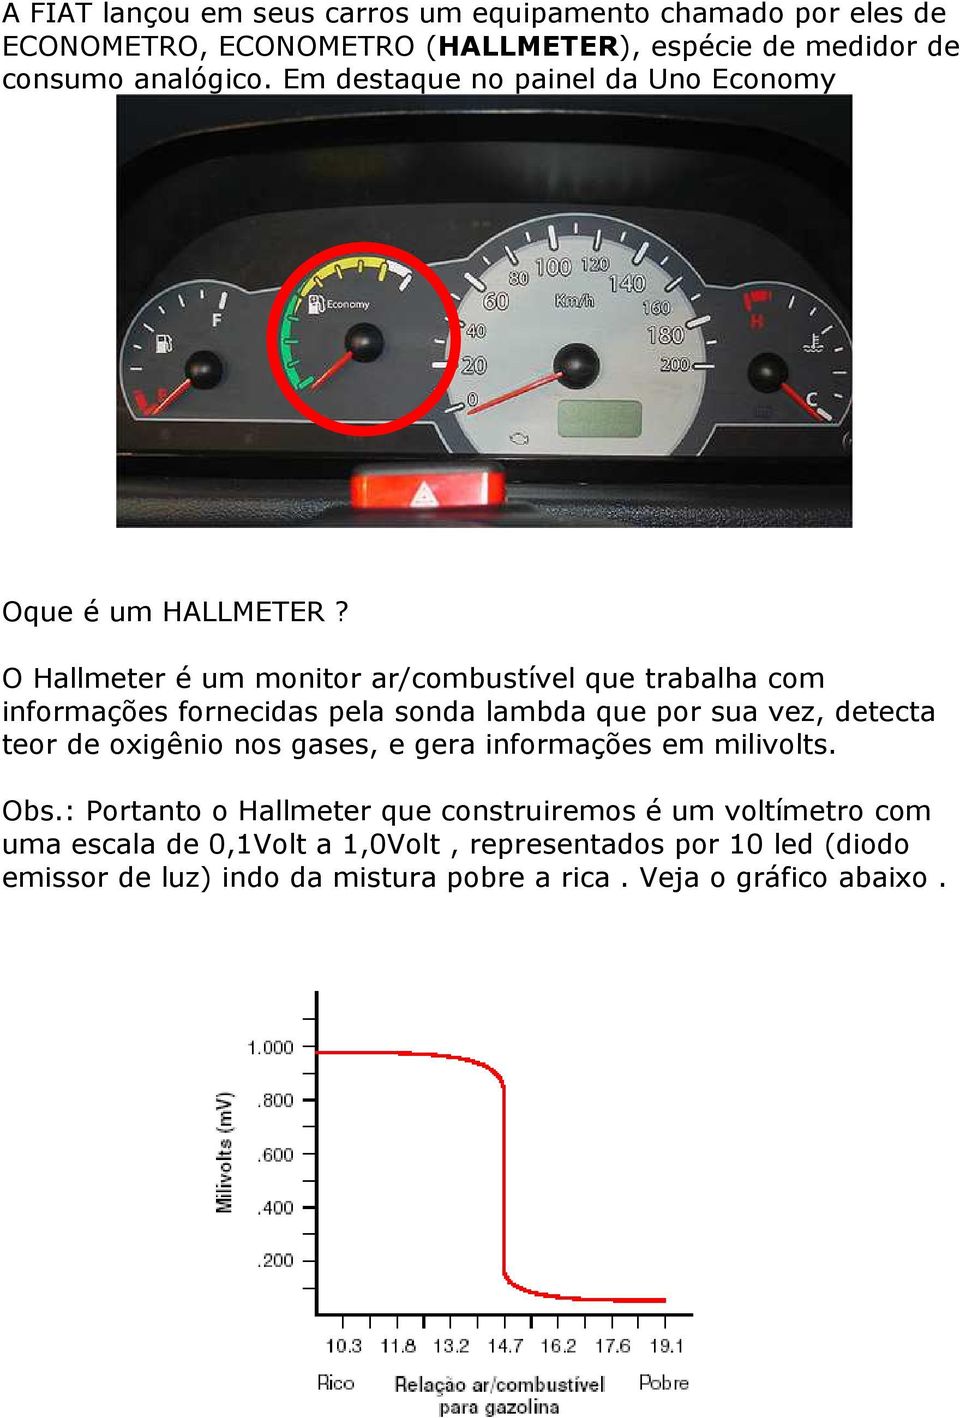 O Hallmeter é um monitor ar/combustível que trabalha com informações fornecidas pela sonda lambda que por sua vez, detecta teor de oxigênio nos